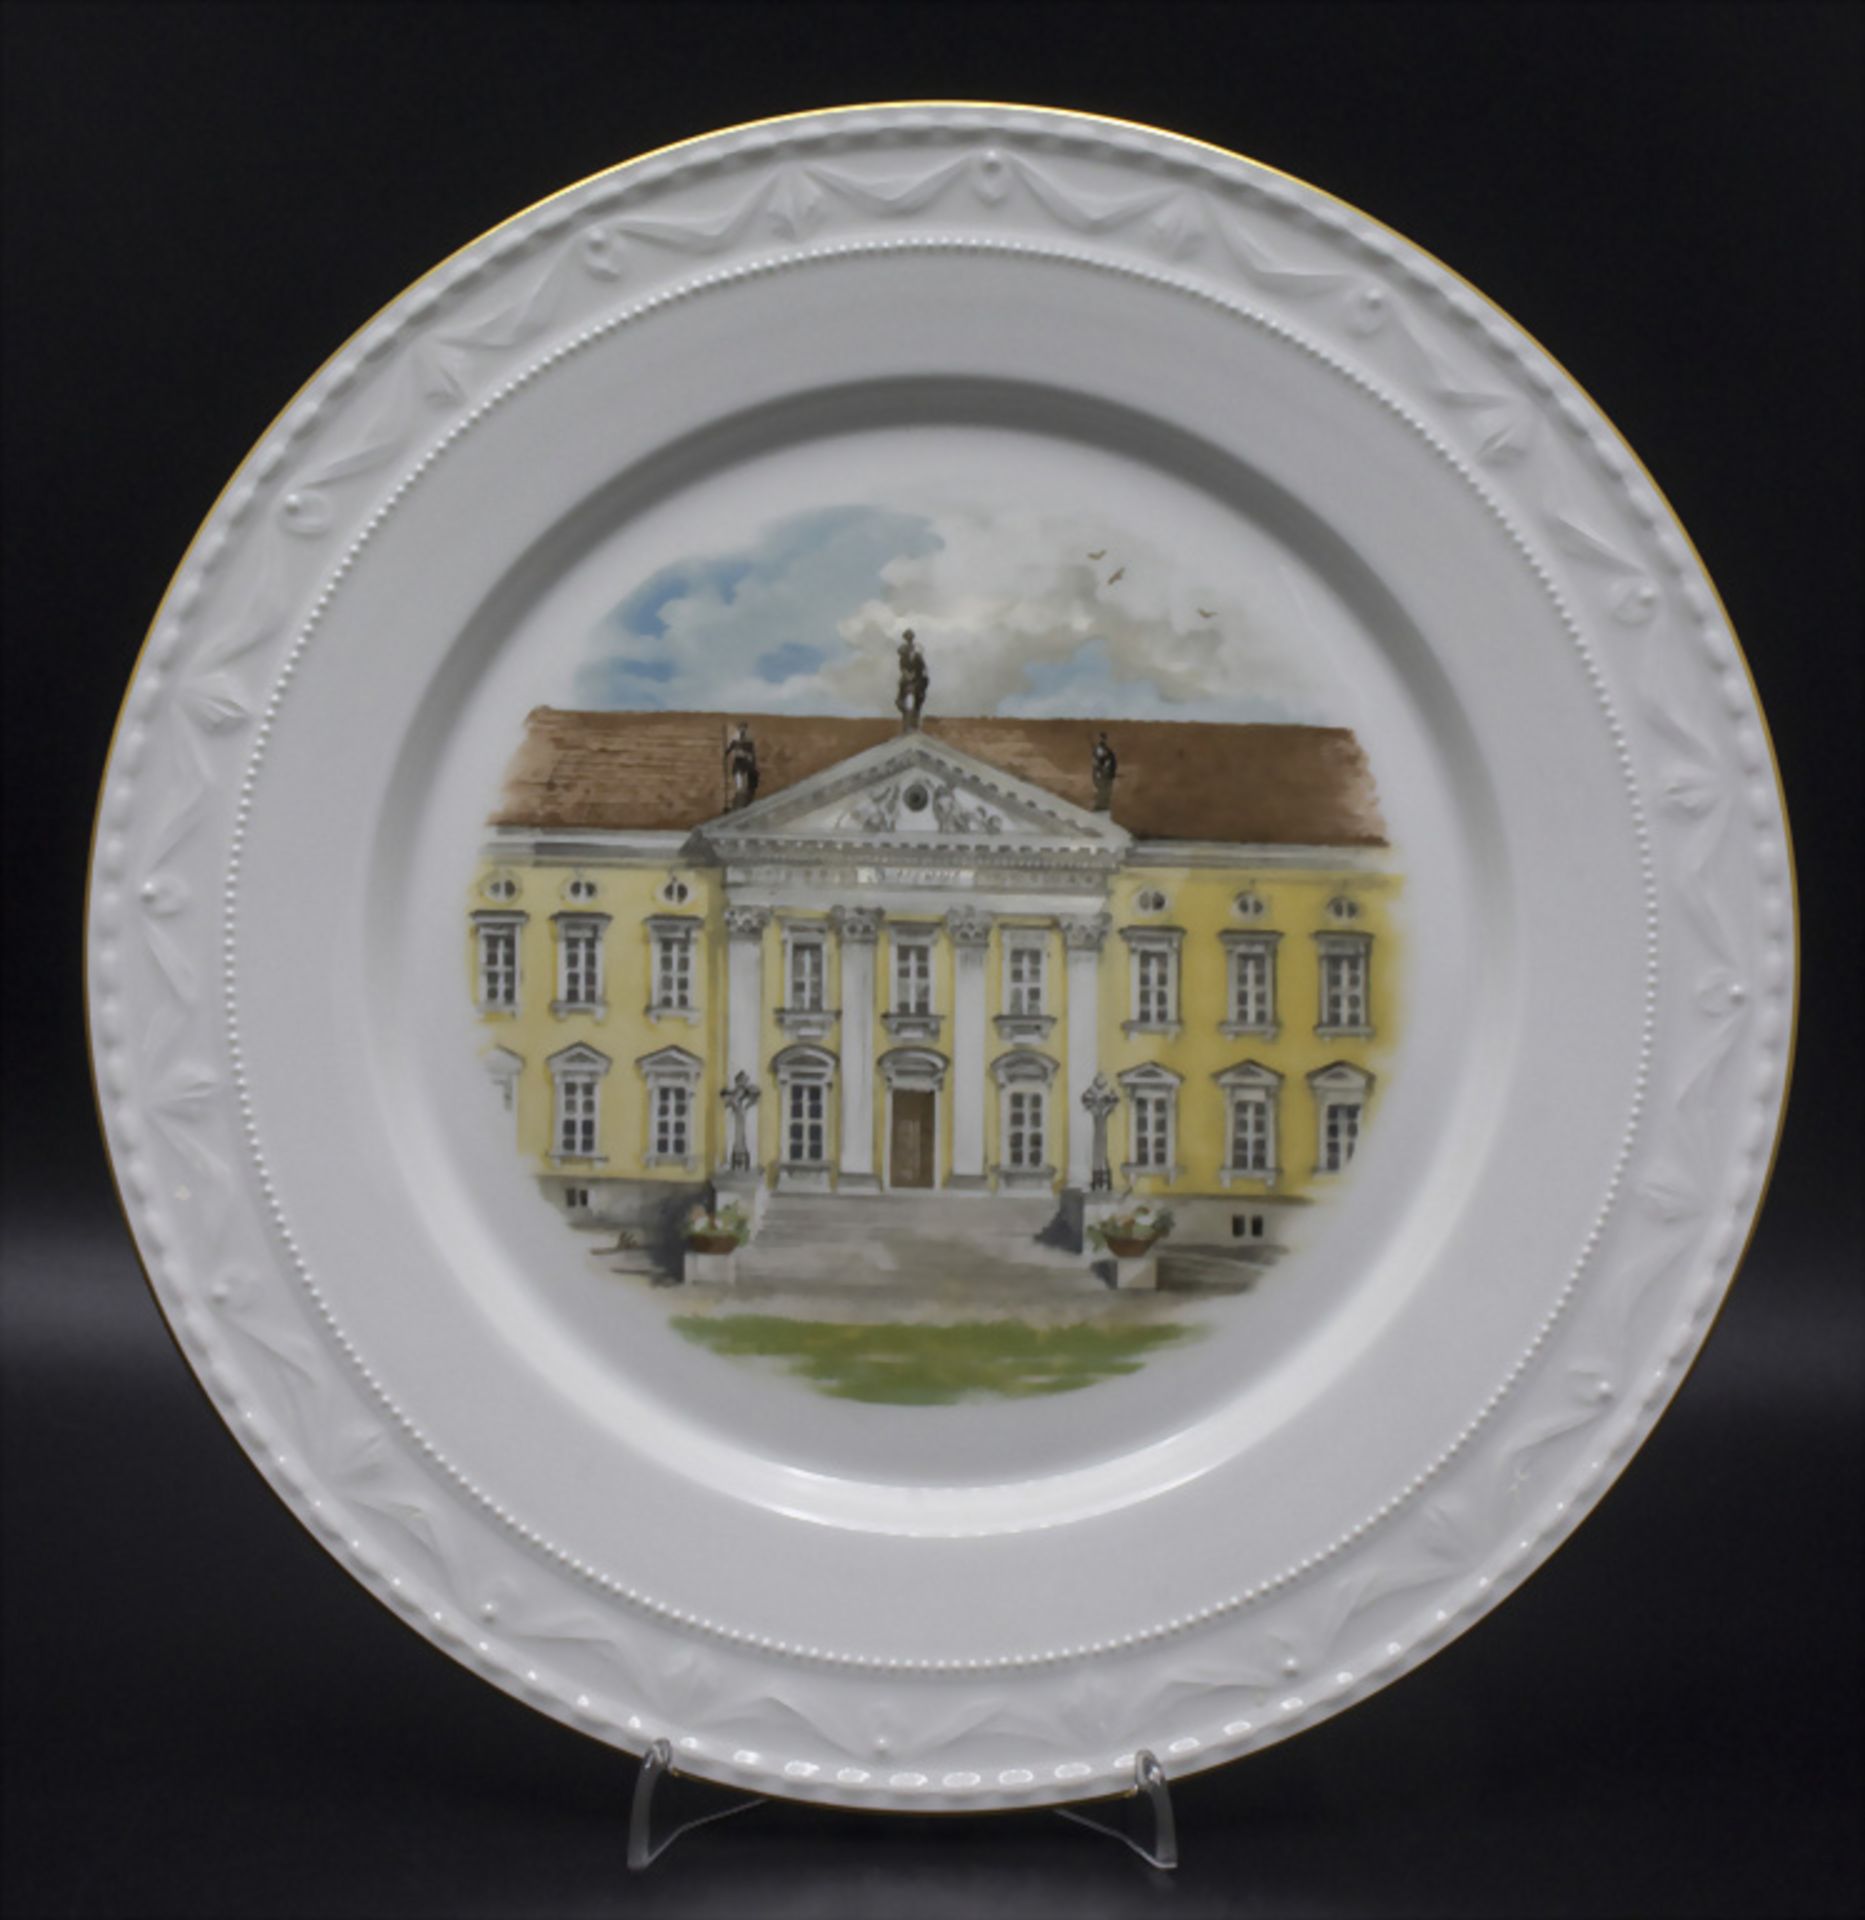 Ansichtenteller 'Schloss Bellevue' / A view plate 'Bellevue castle', KPM, Berlin, 20. Jh.